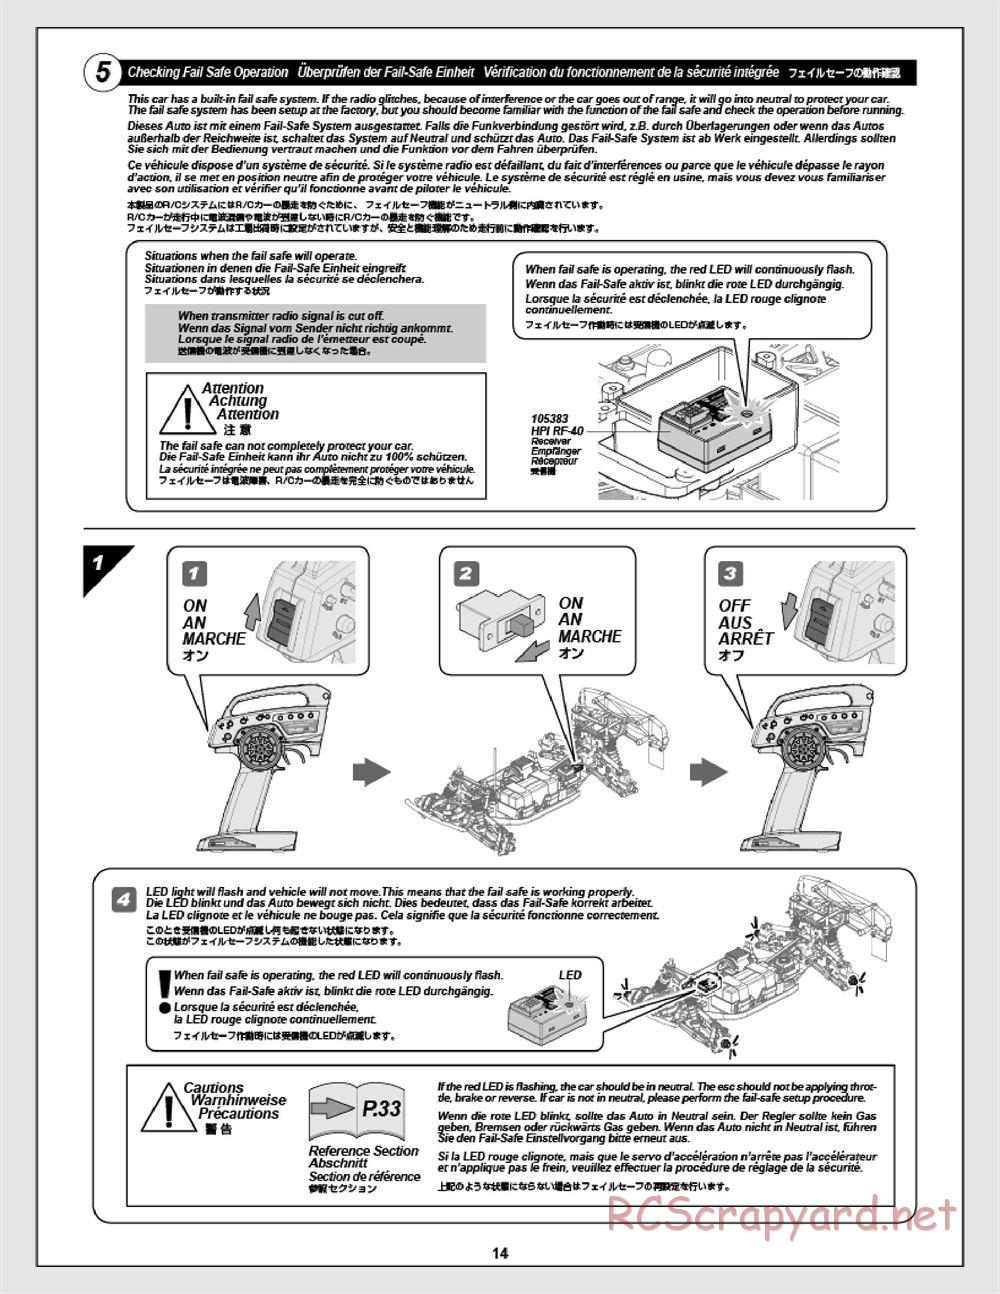 HPI - Apache SC Flux - Manual - Page 14